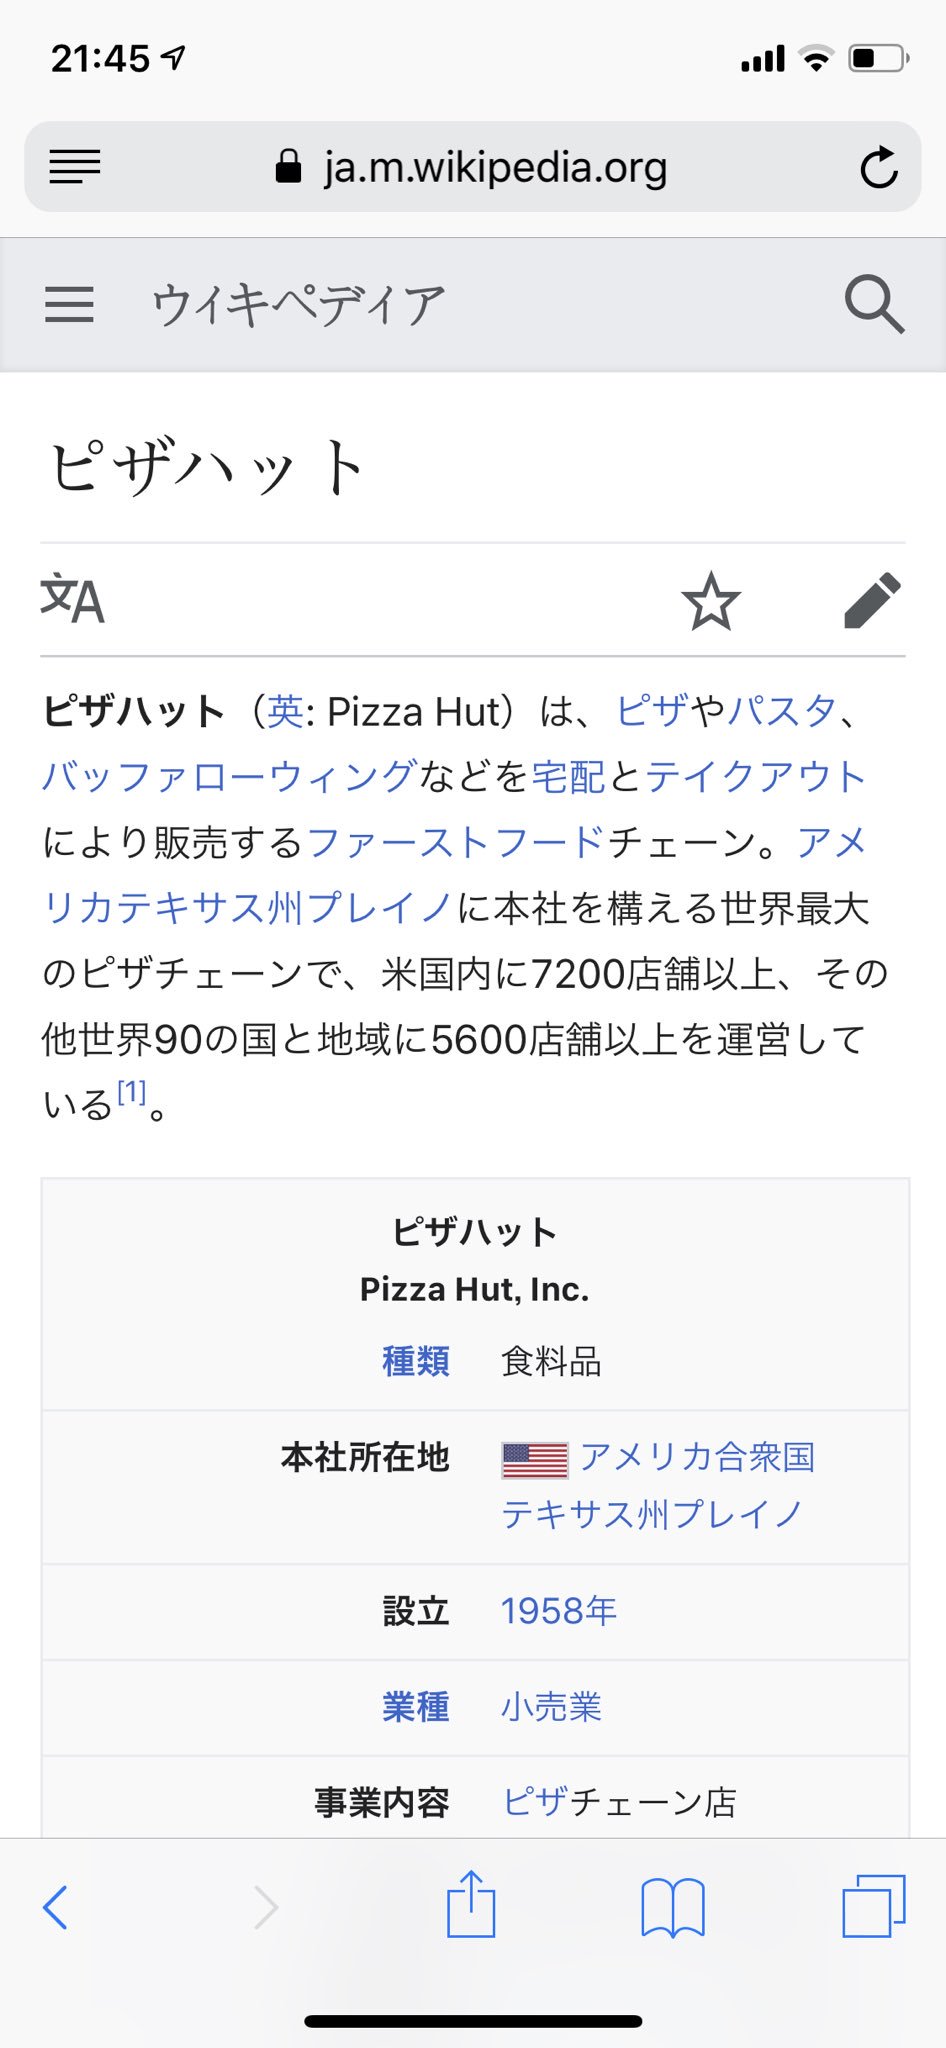 しゃけもと 話題になってるピザハットのハットが小屋を意味するhatであることに対し 同じピザ専門店のピザ ロイヤルハットのハットは帽子を意味するhutであることに気づいた なんならロイヤルハットの方のwikiに書いてたわ